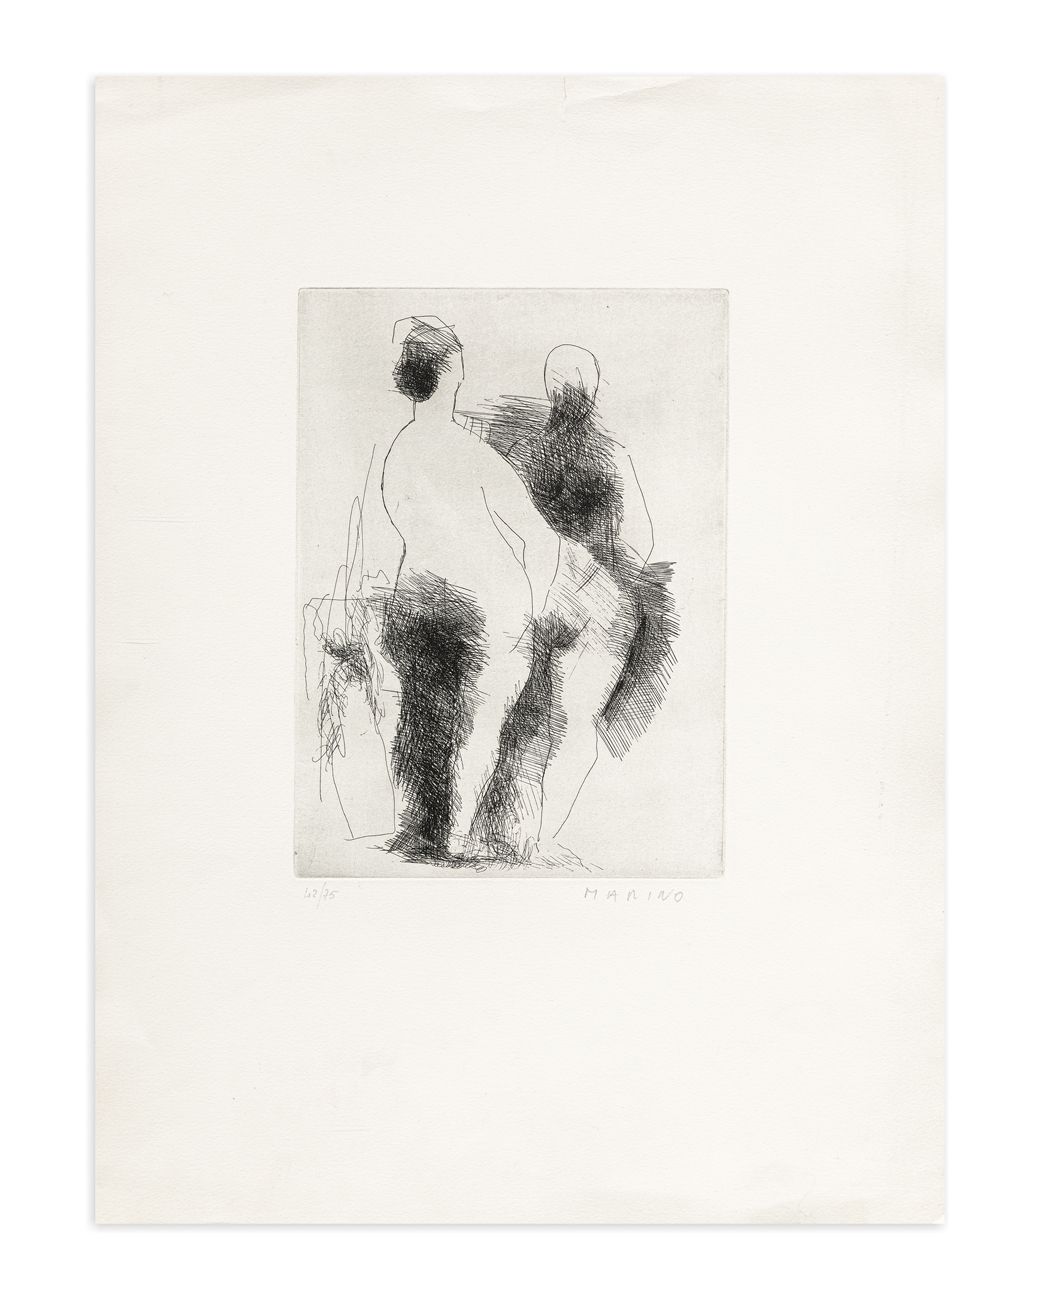 MARINO MARINI (1901-1980) - Due pomone, 1956 蚀刻

板材26x18.5厘米

床单51x37.5厘米

正面有铅笔&hellip;